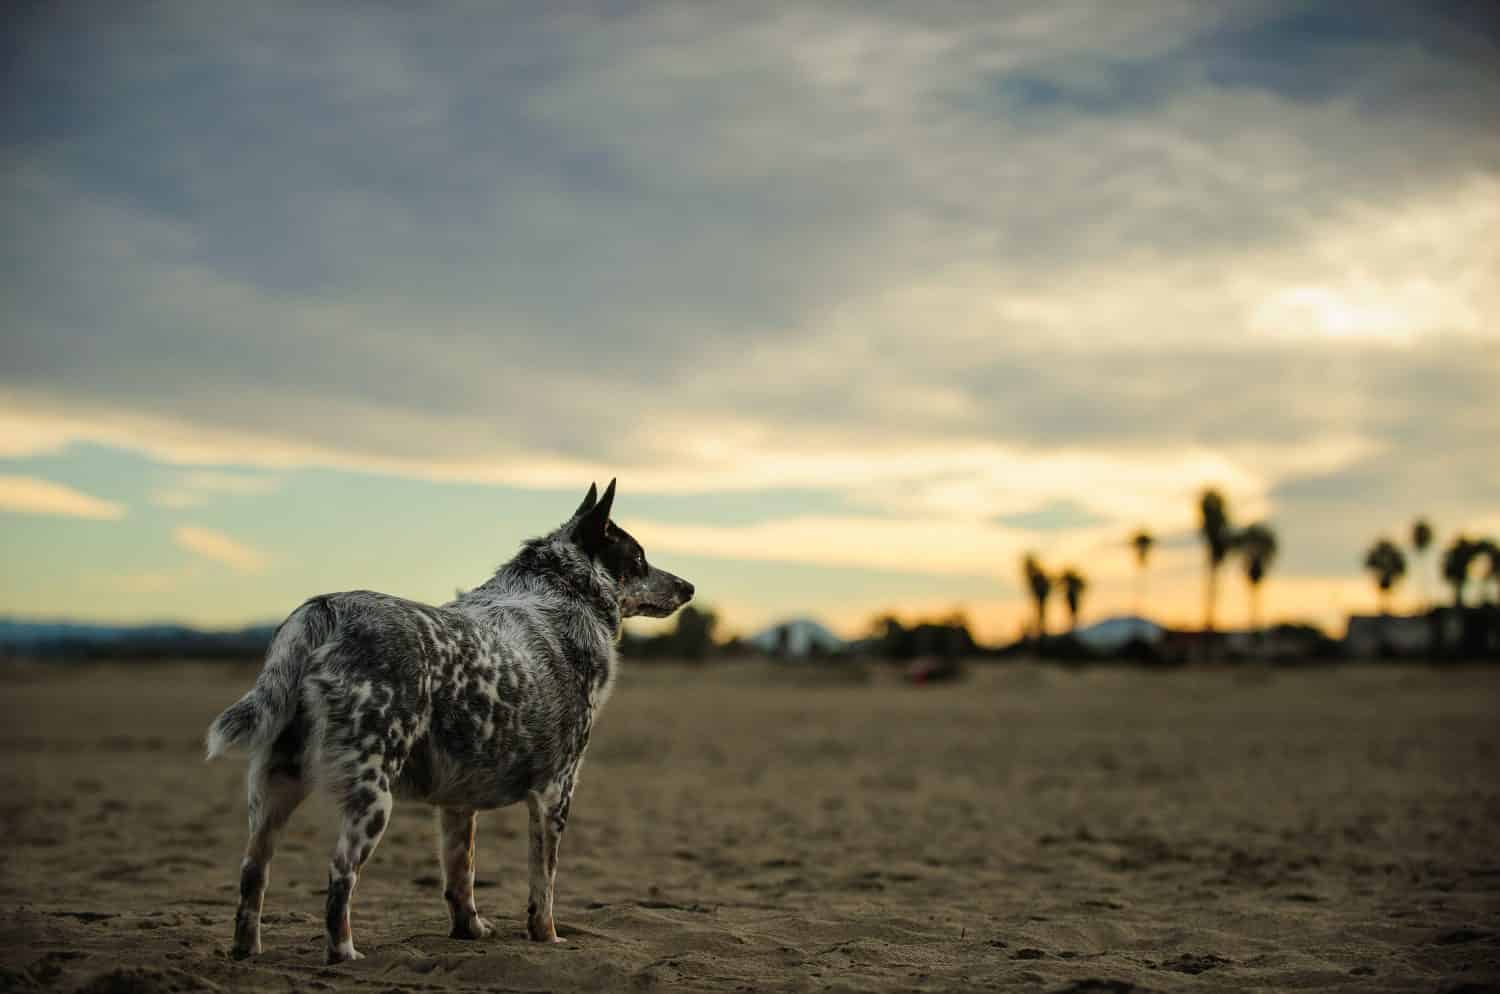 Australian Cattle Dog standing on beach at sunrise